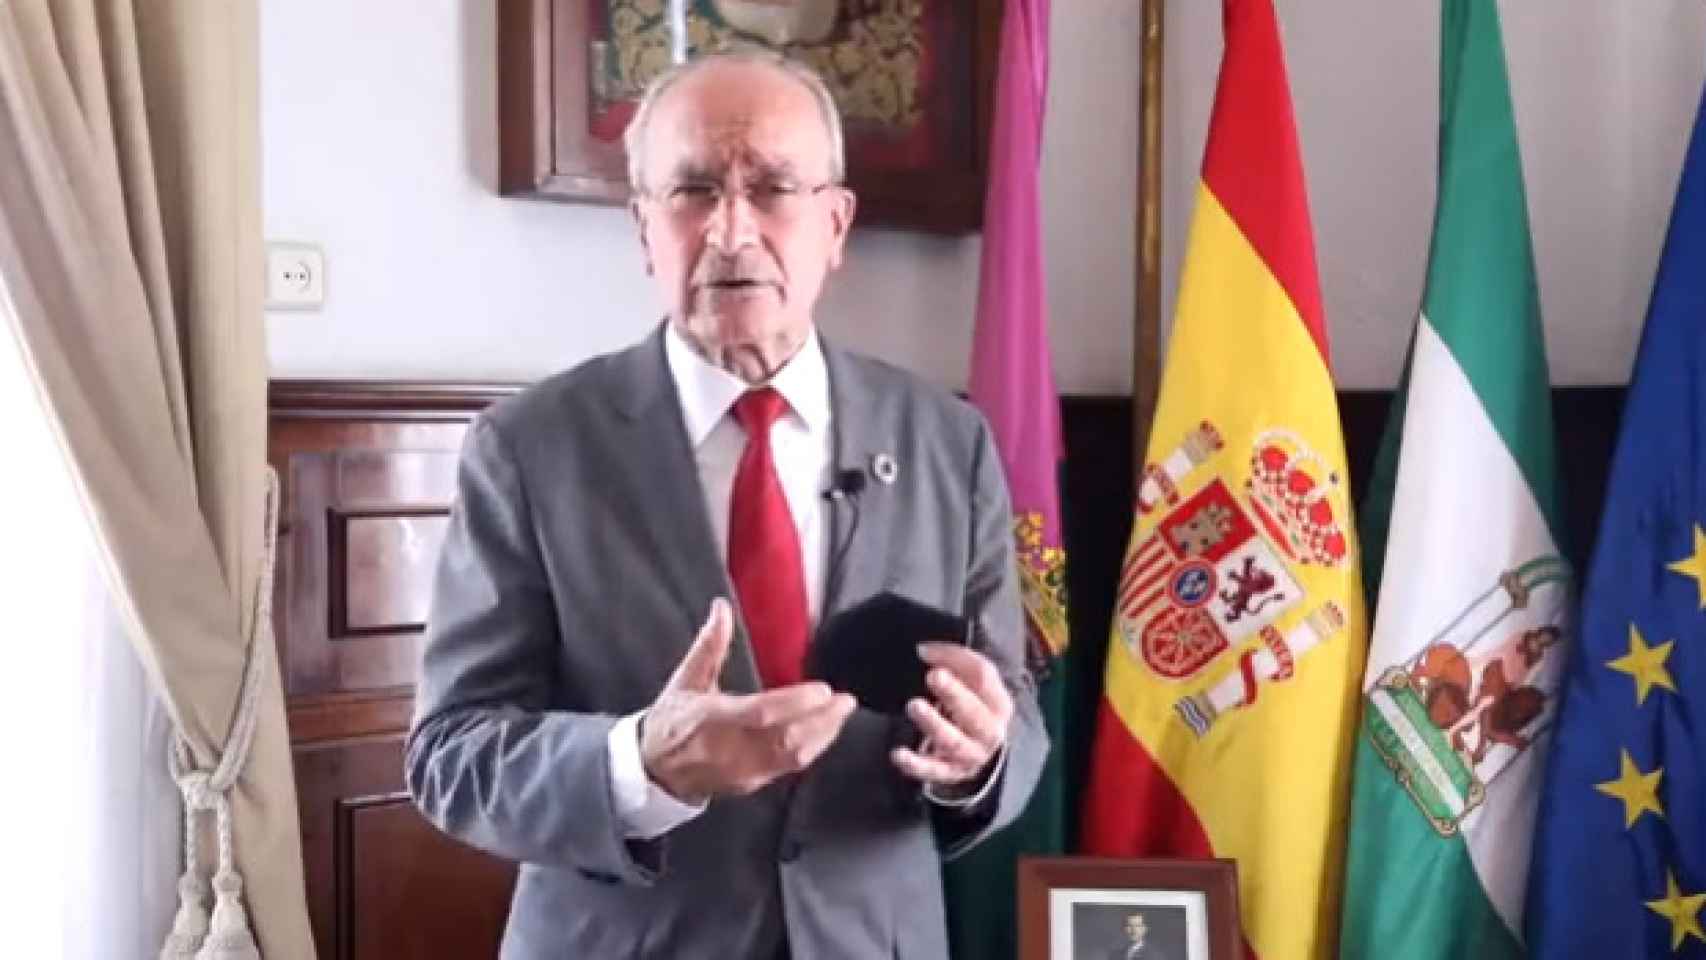 El alcalde de Málaga lanza un mensaje sobre la pandemia en redes sociales.